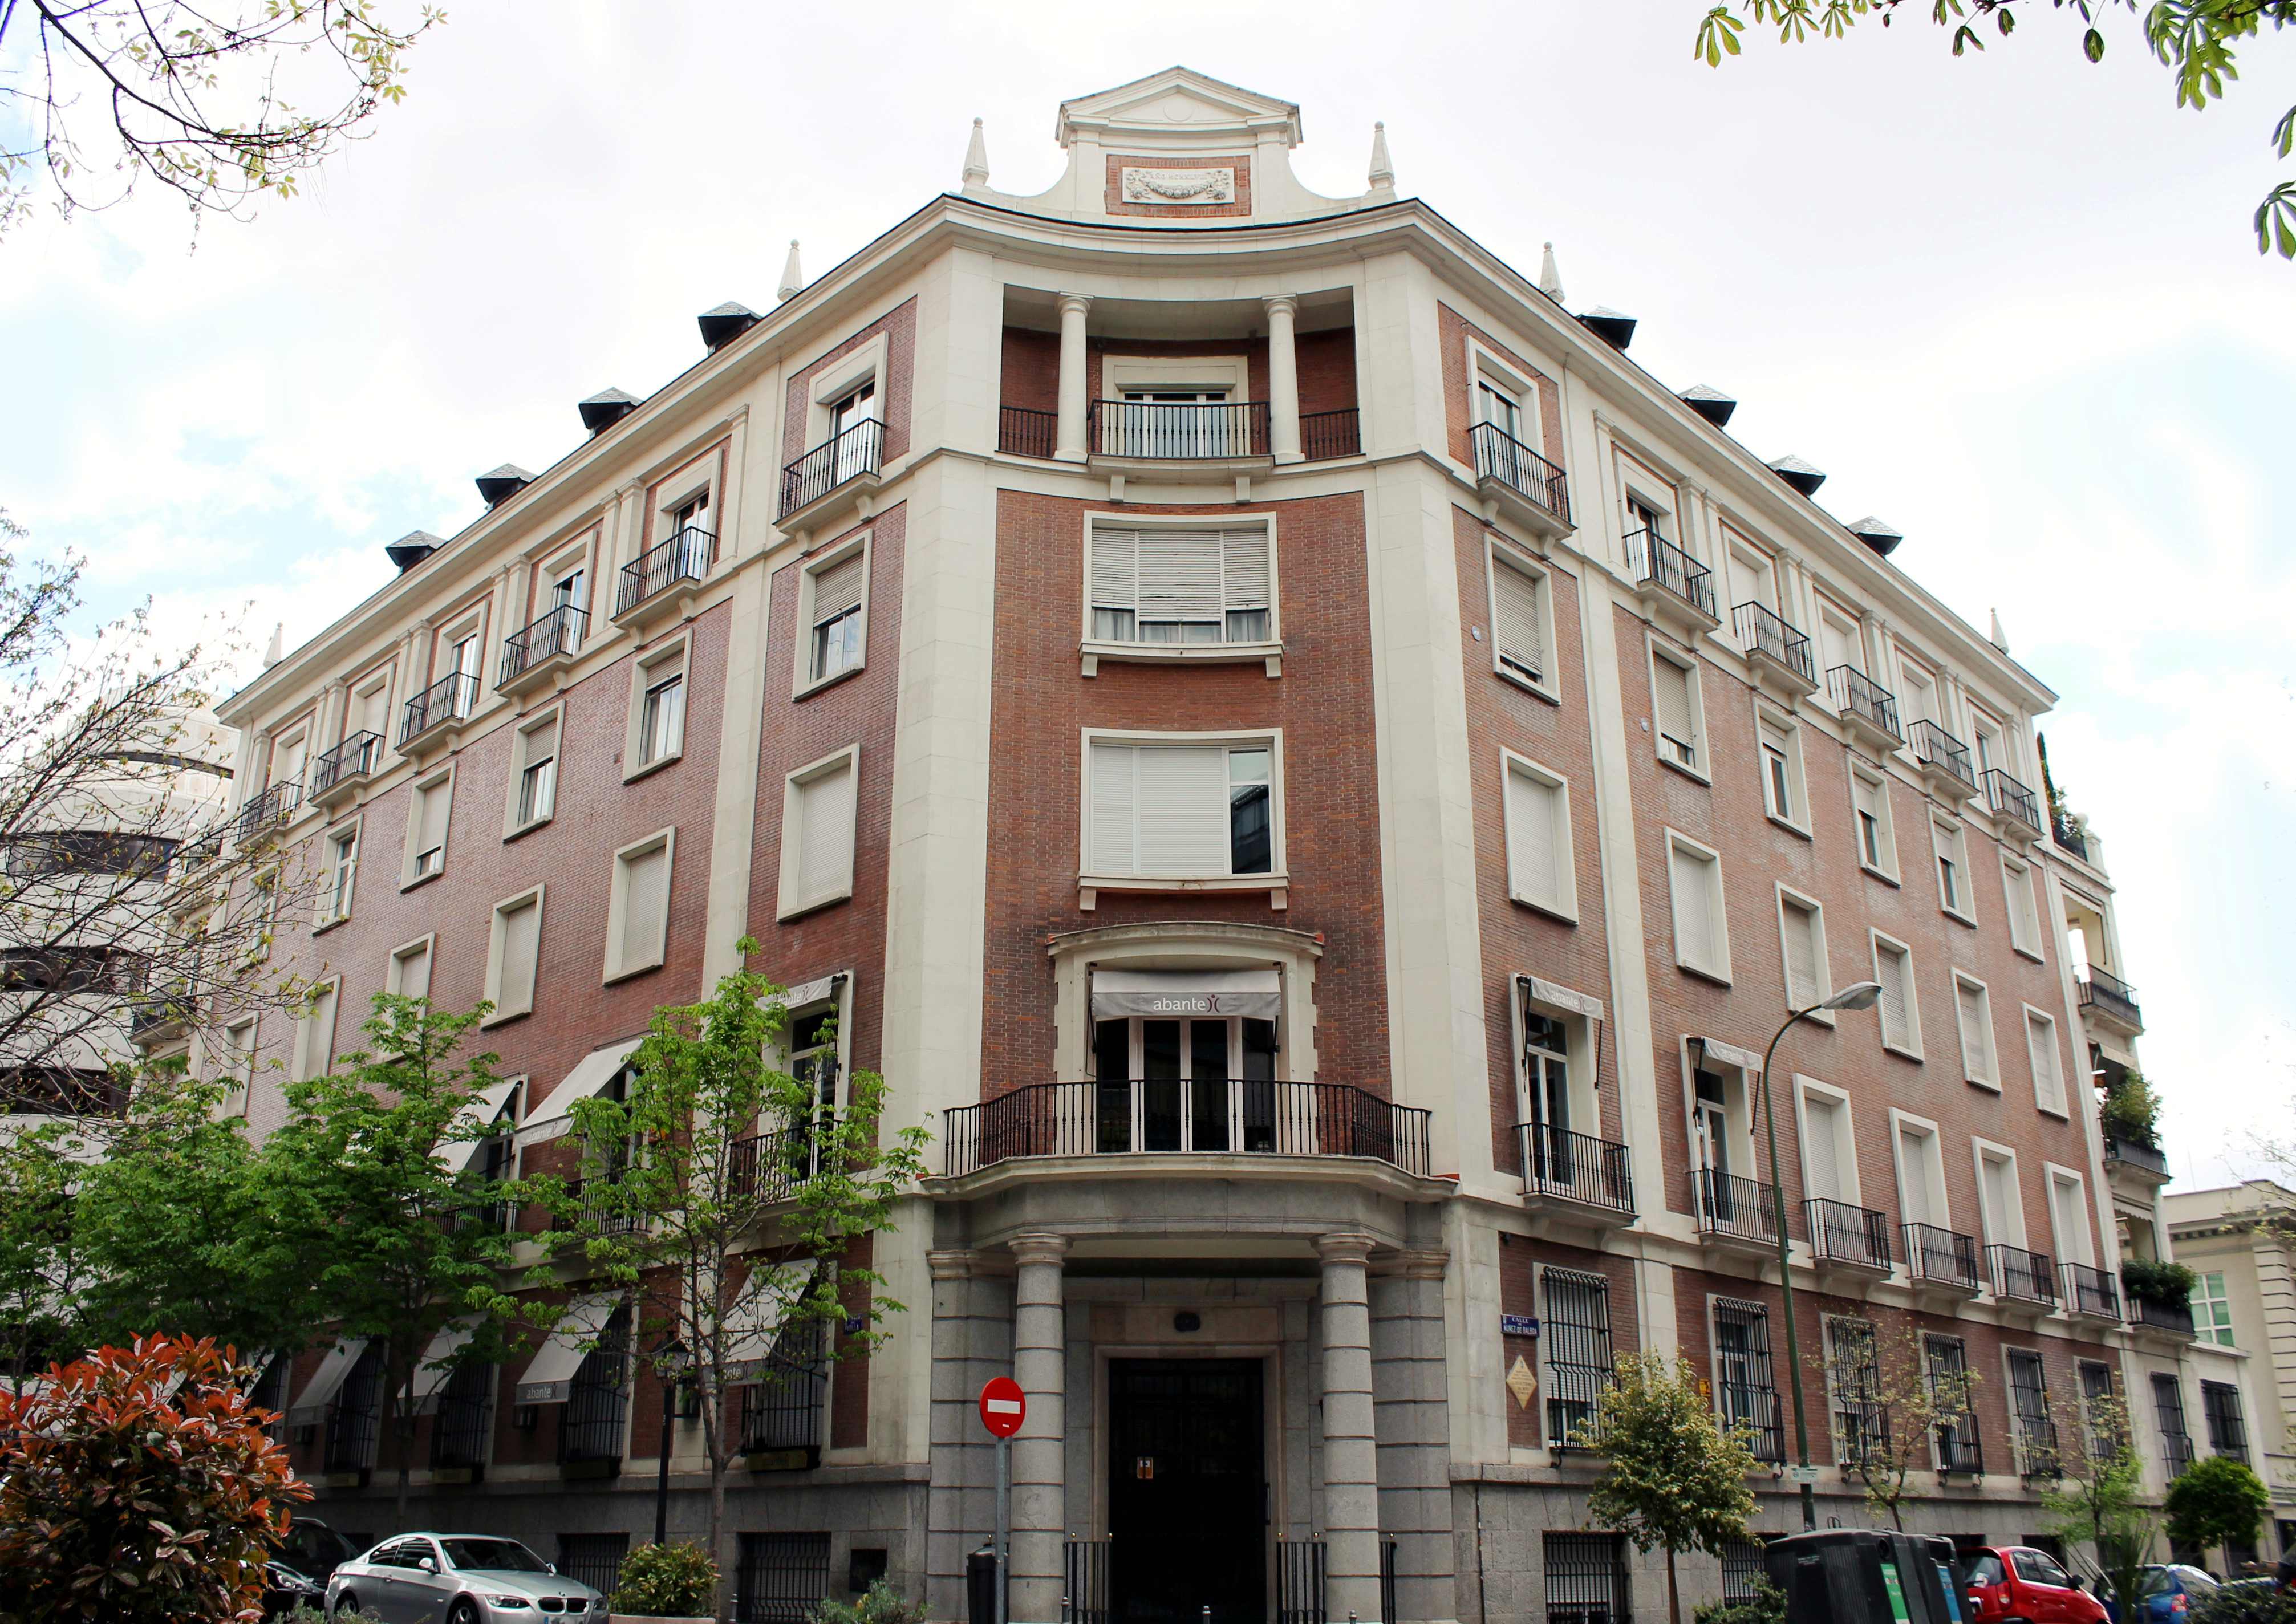 Oficinas de infinitC en Madrid.